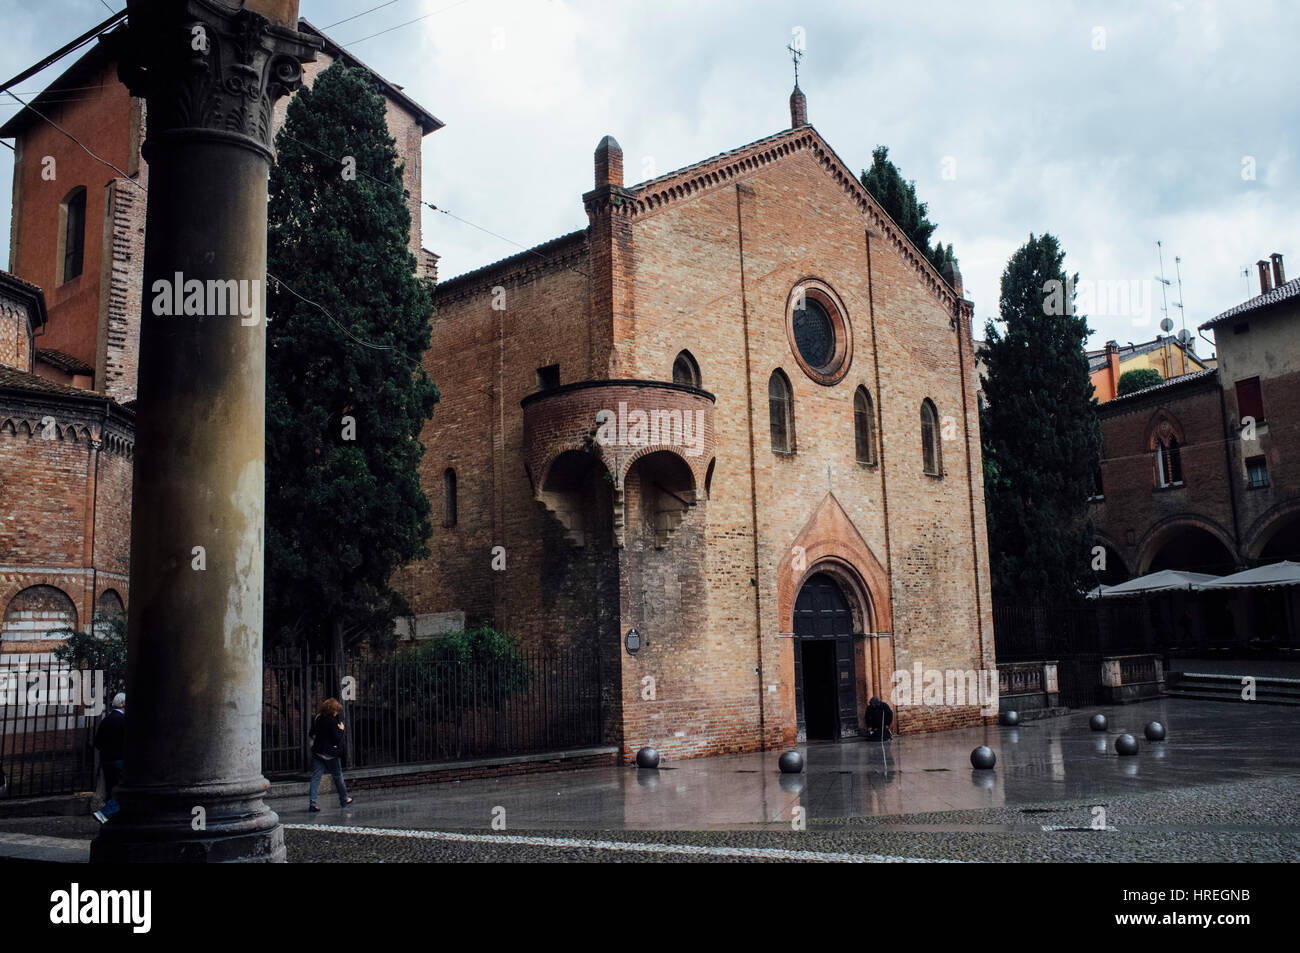 The Basilica di Santo Stefano is located on the Piazza Santo Stefano in Bologna, Italy. Stock Photo